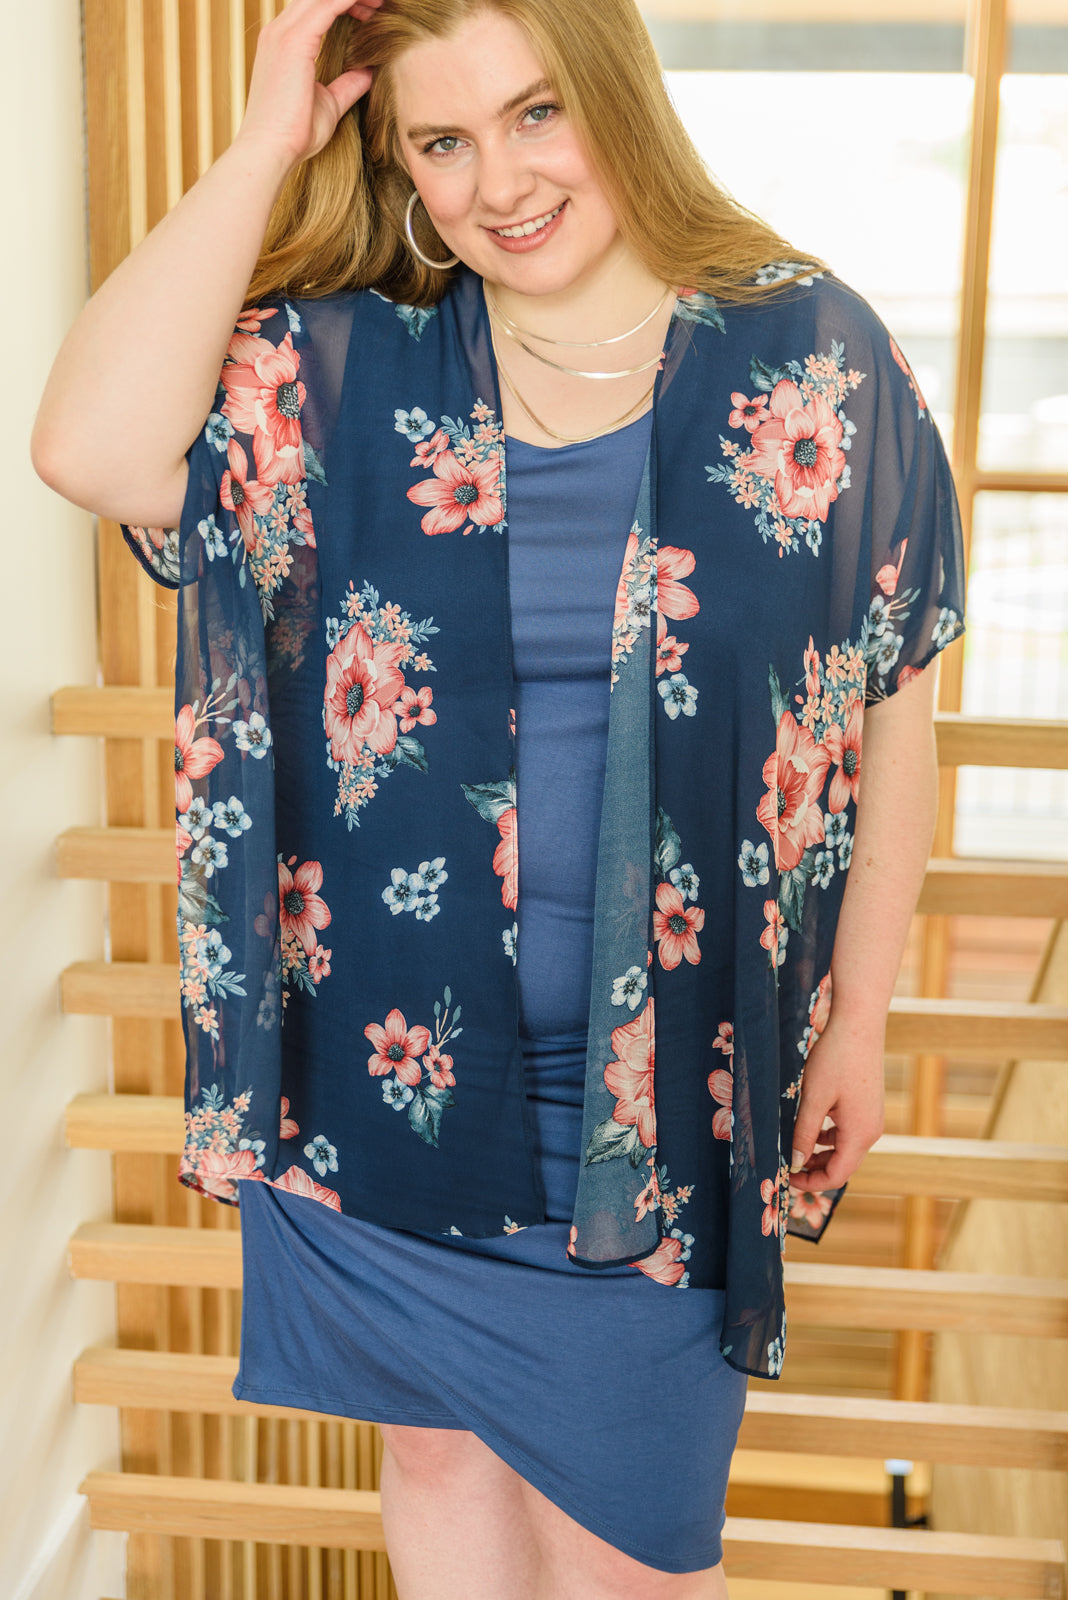 Kimono à fleurs sauvages en bleu (exclusivité en ligne)